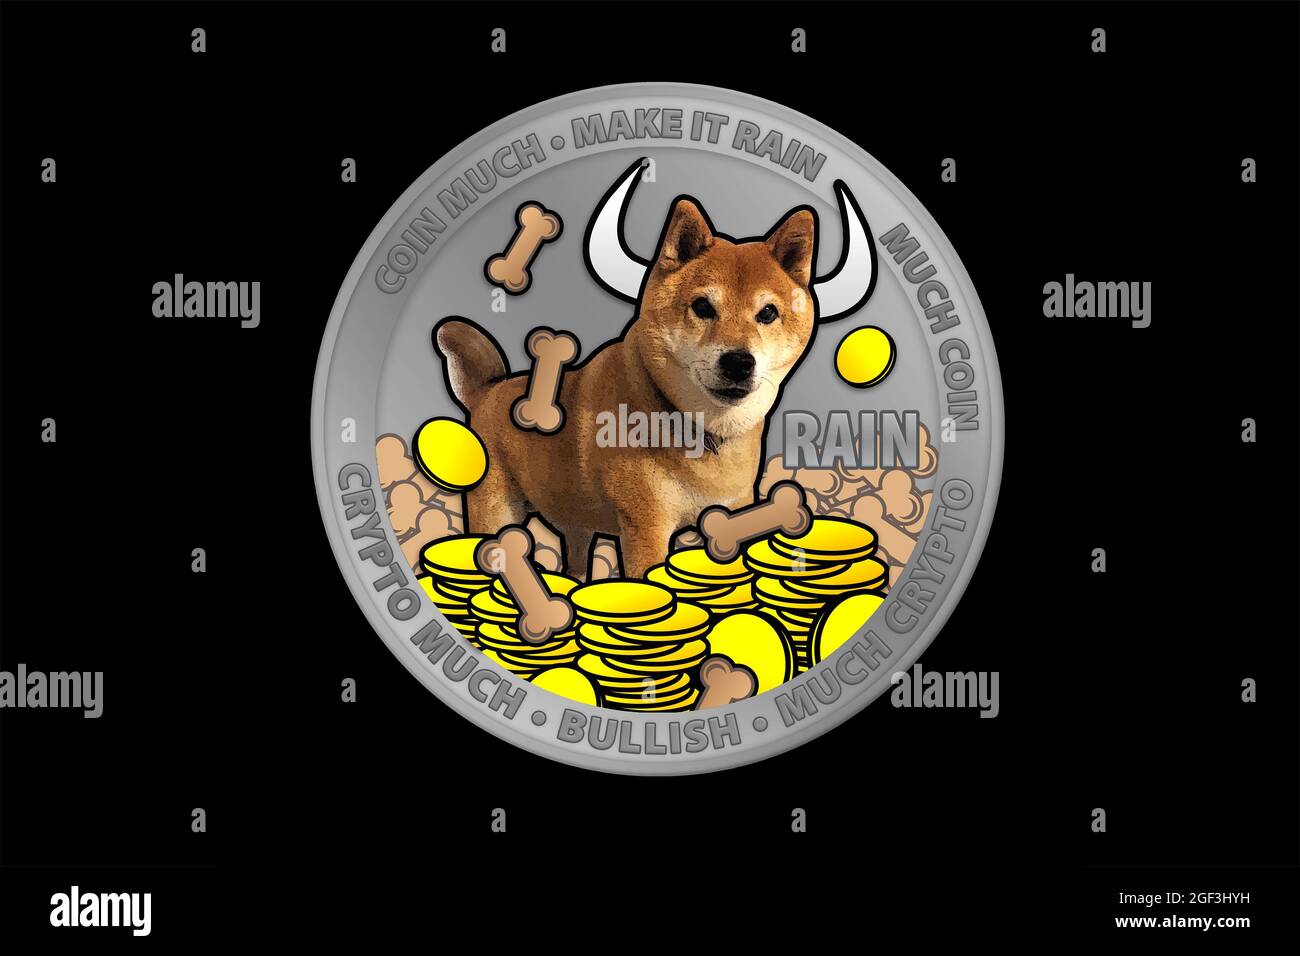 shiba inu, shib, doge coin crypto currency, make it rain theme, bullish Stock Photo